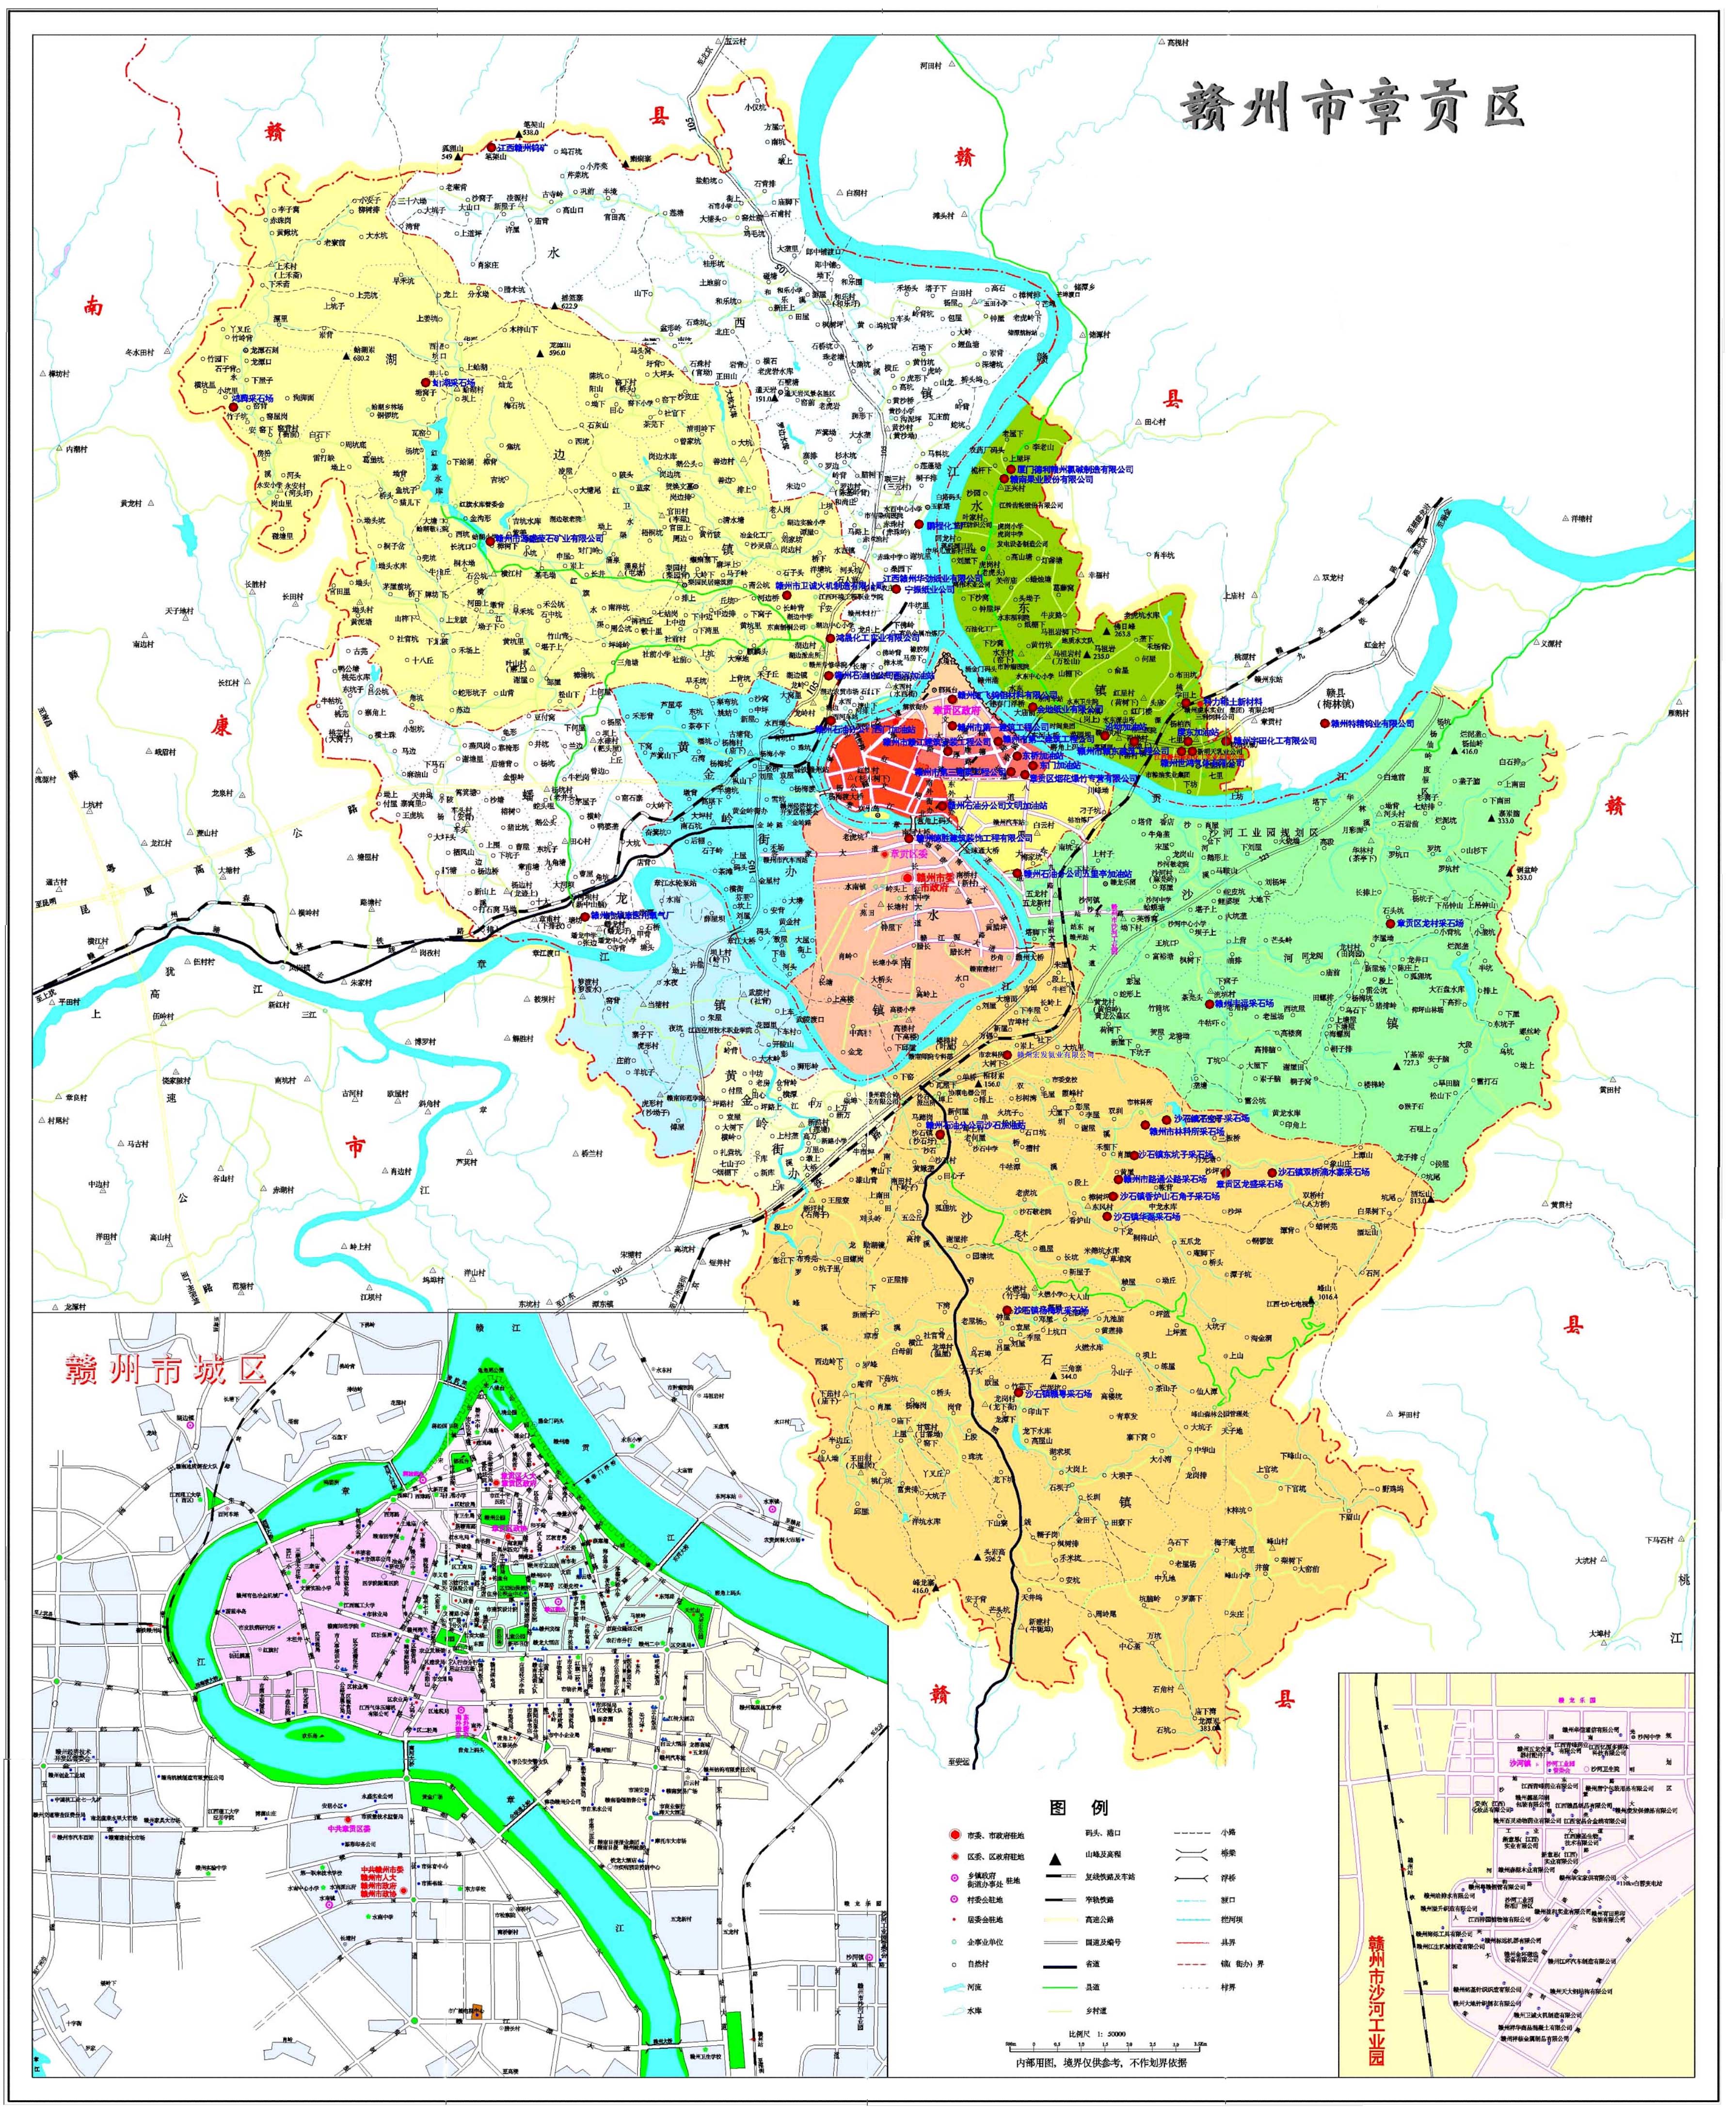 南部 赣州市章贡区地图  我就是曾艳庄 北部各省区市相关的区划地图帖